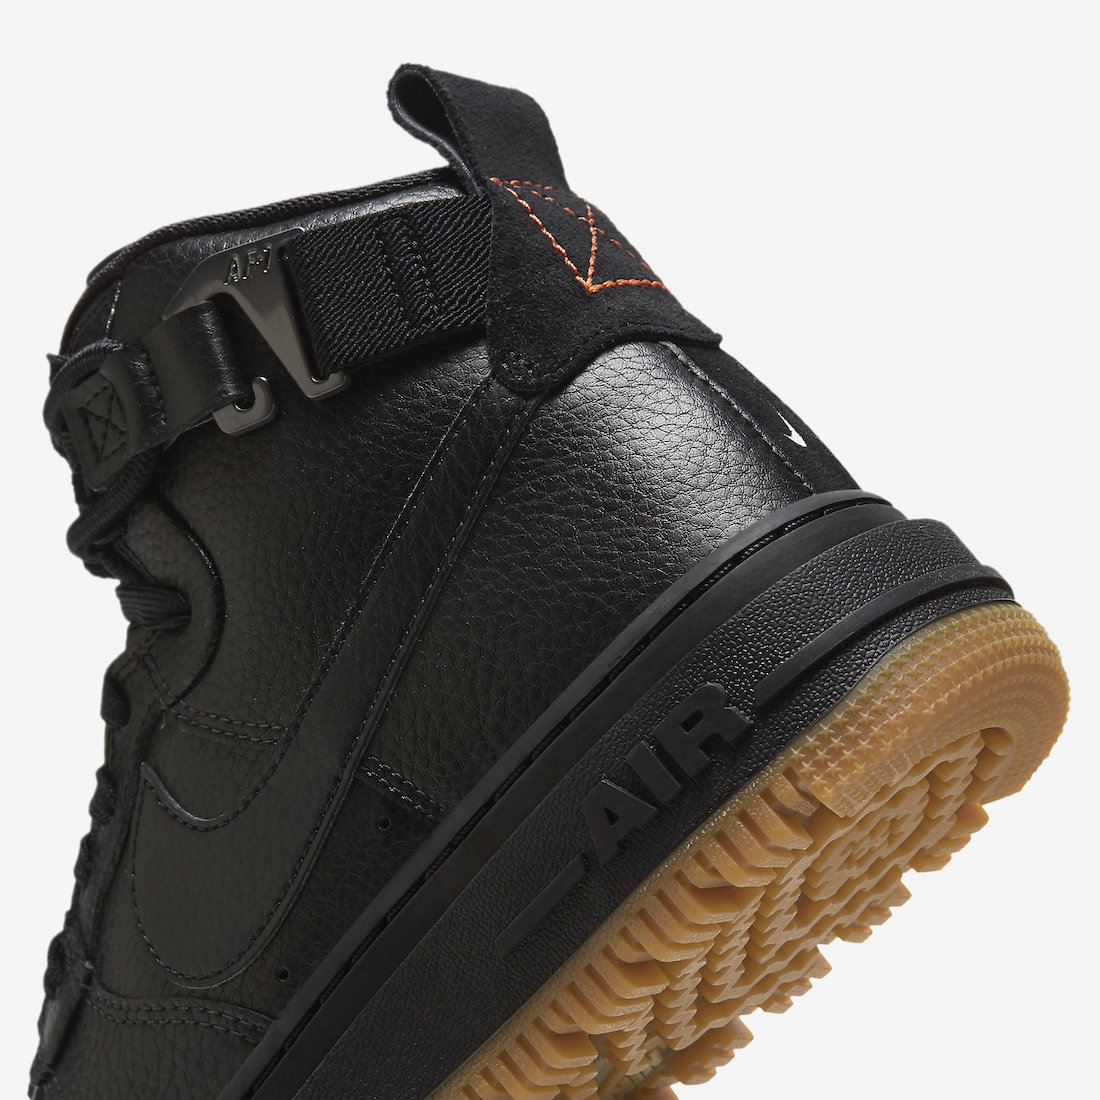 Nike Air Force 1 High Black Suede Gum - Sneaker Bar Detroit